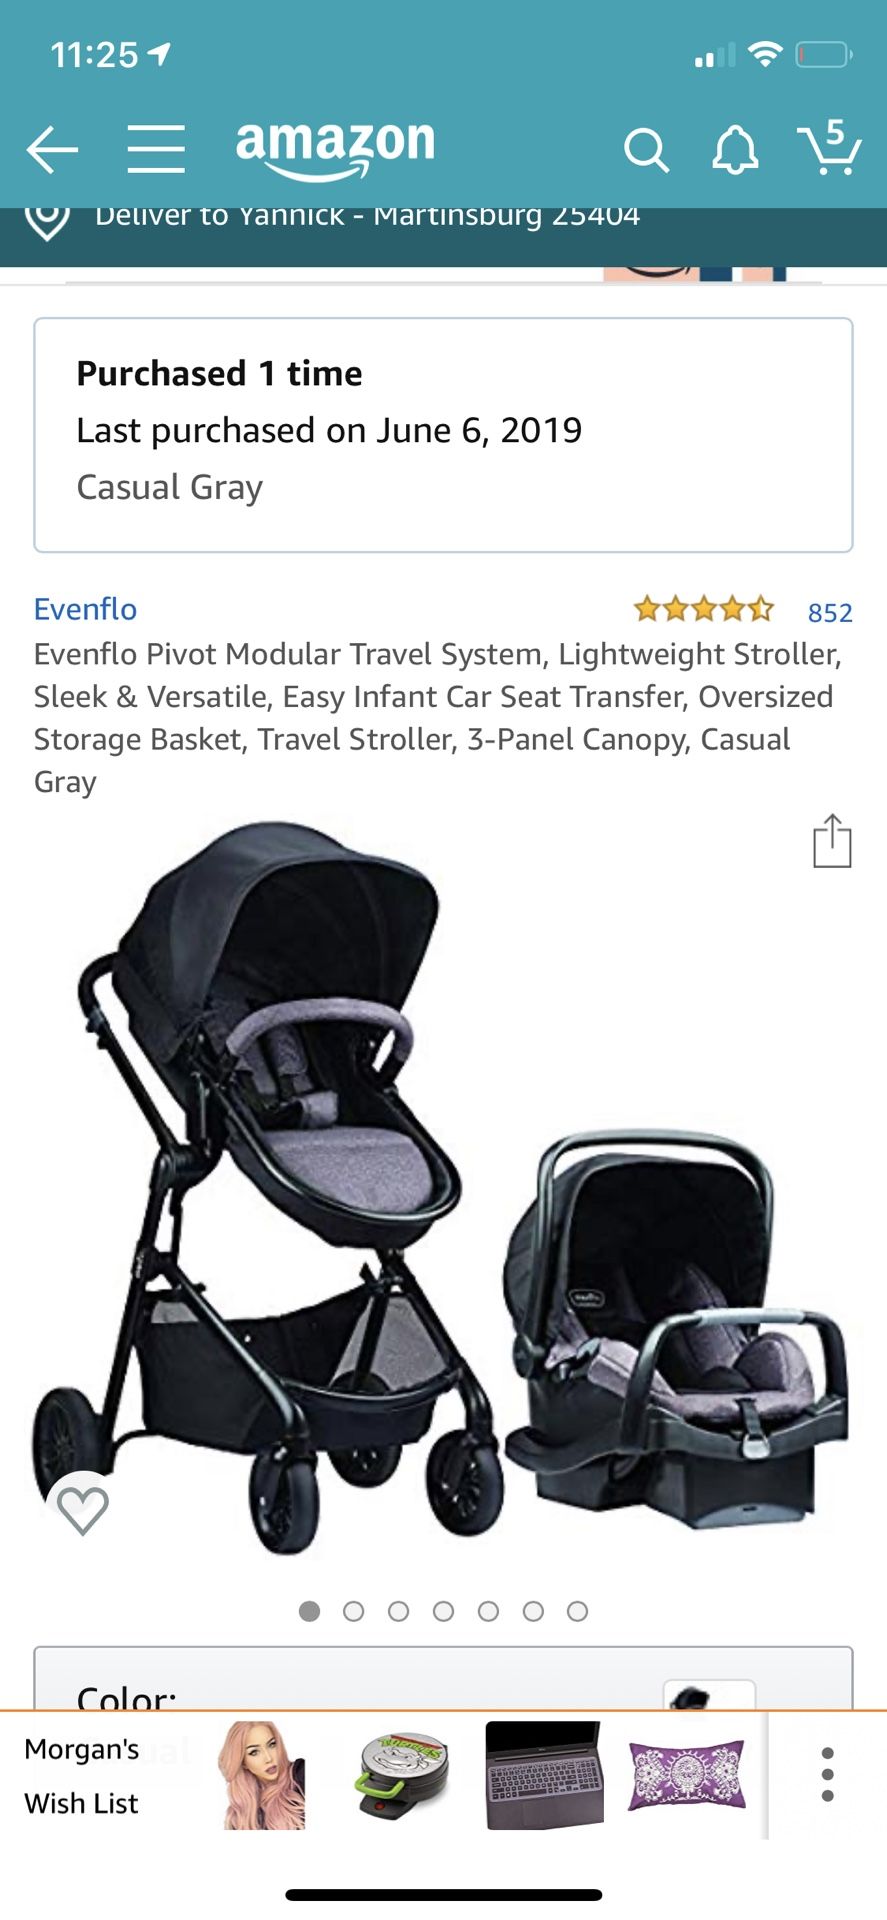 Even Flo travel system for infants